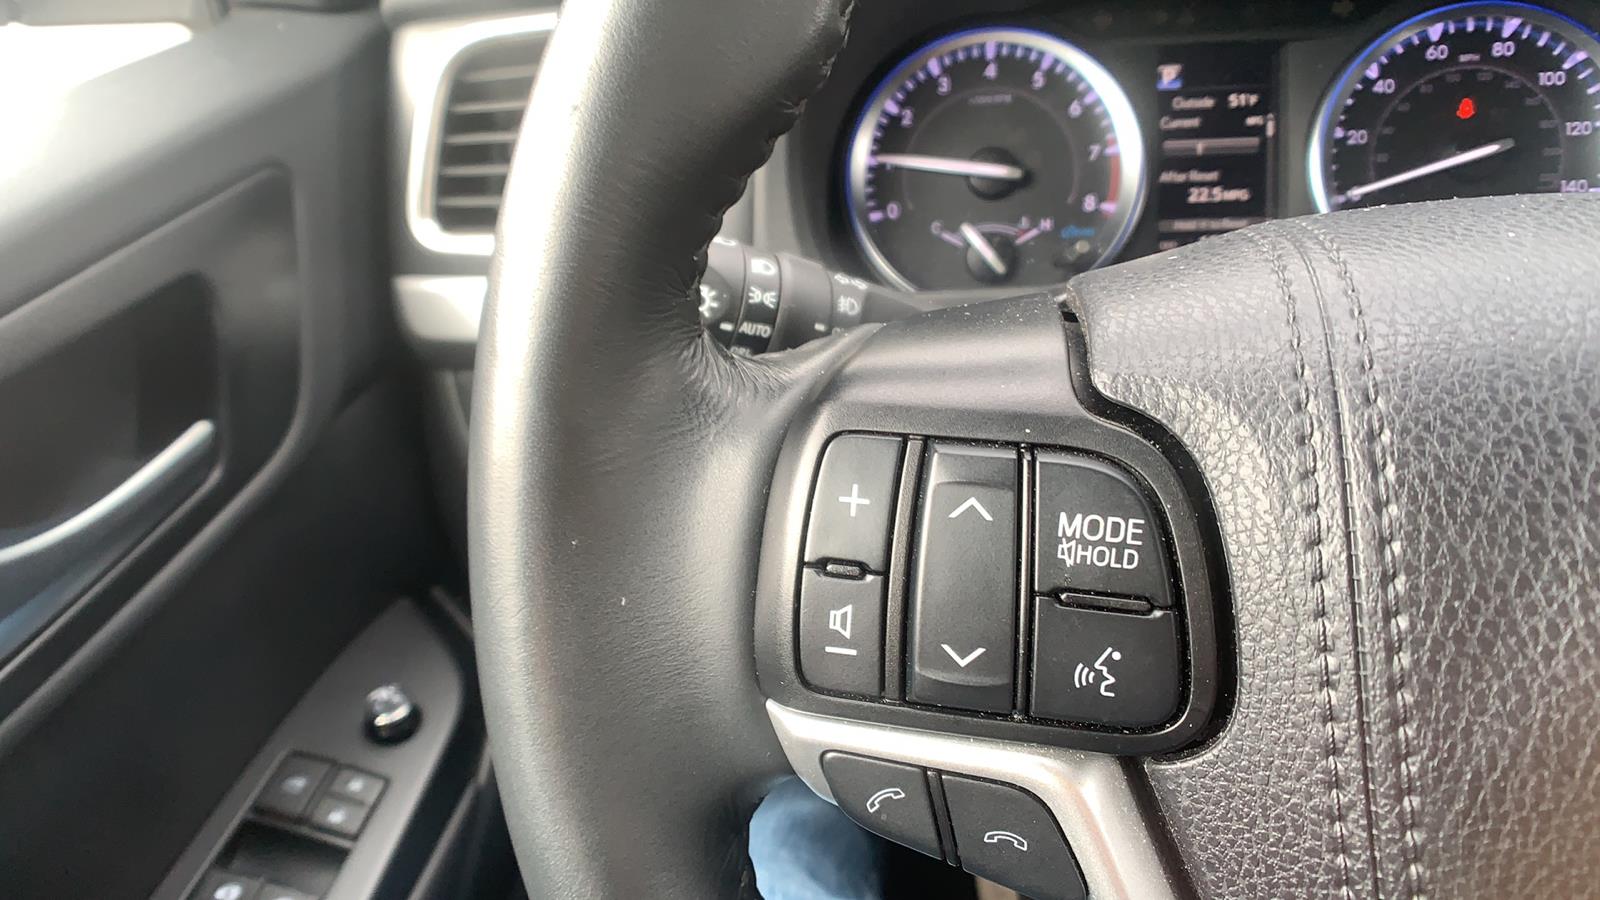 2019 Toyota Highlander Sport Utility